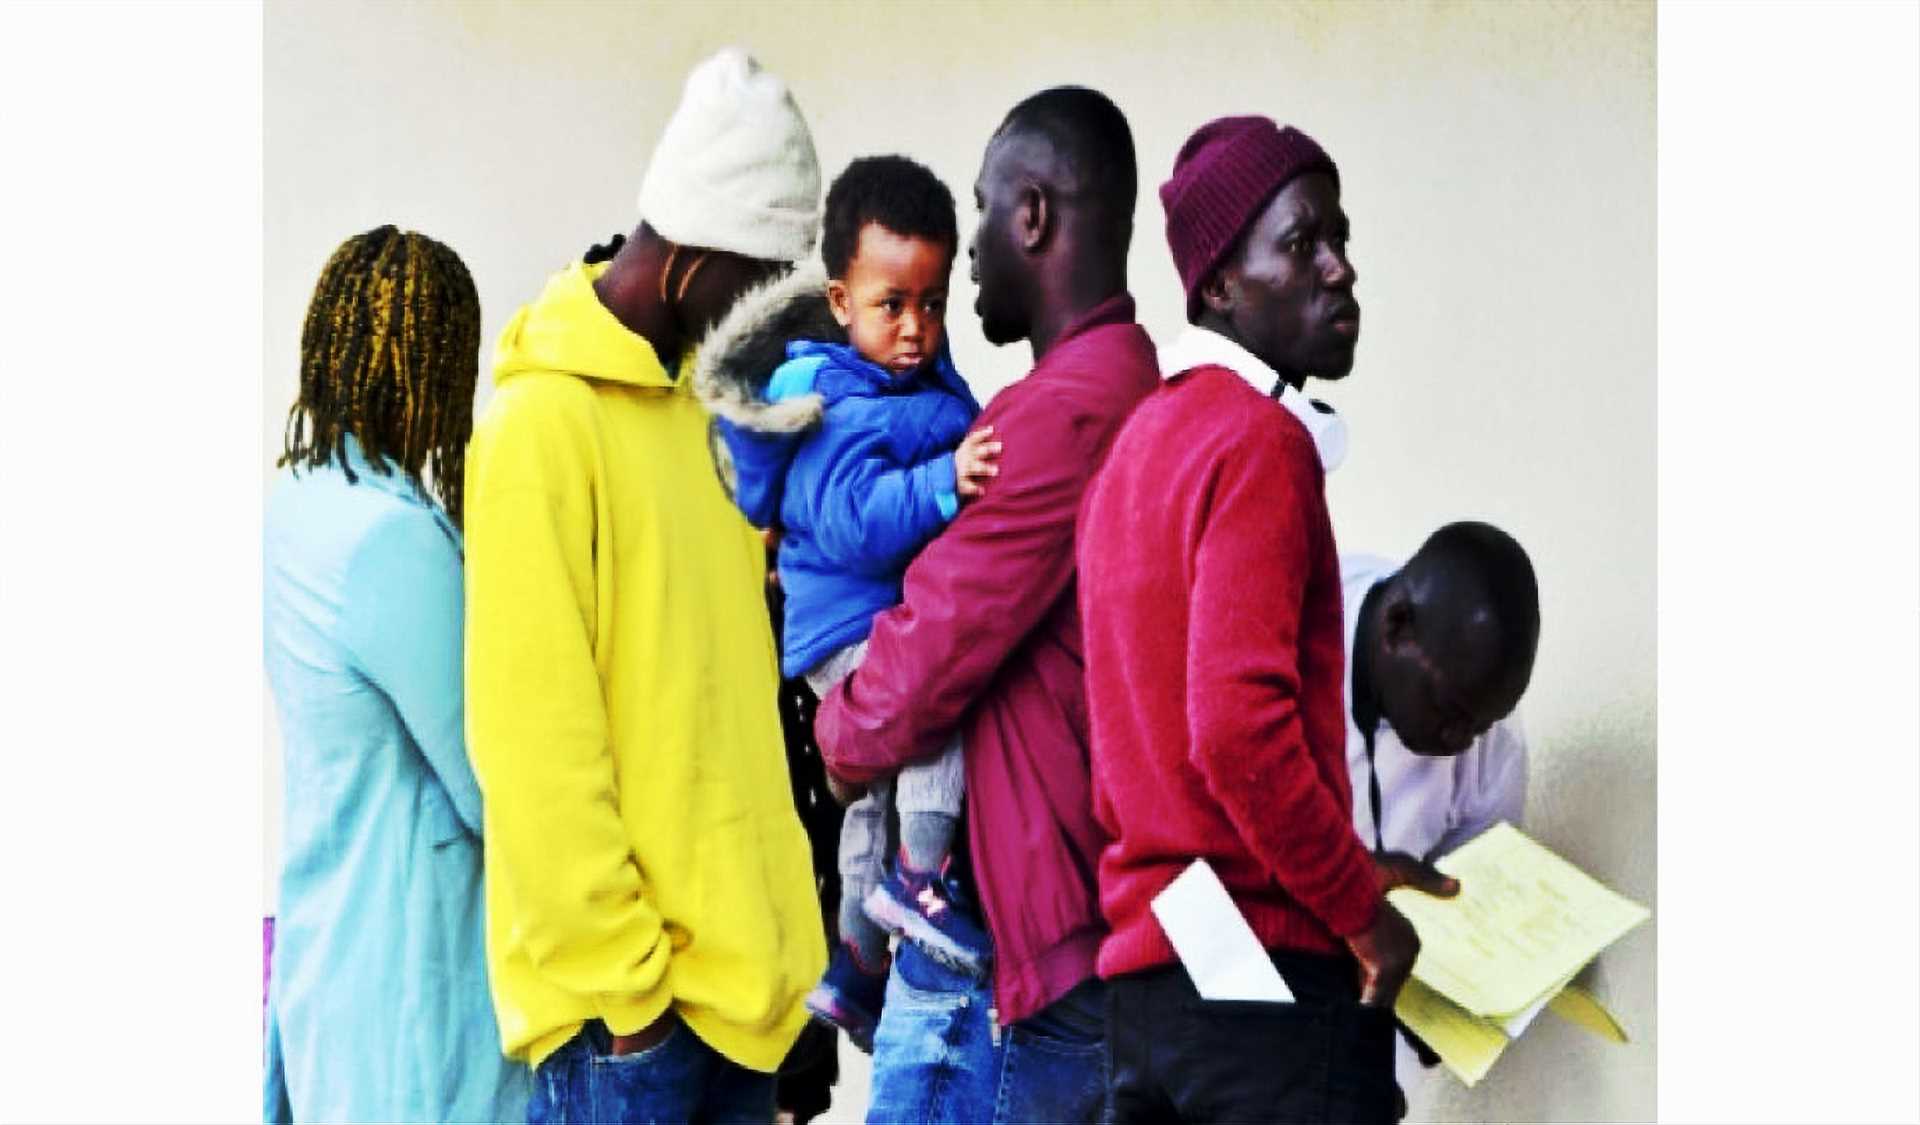 Immigrés subsahariens, boucs émissaires pour faire oublier l’hémorragie maghrébine